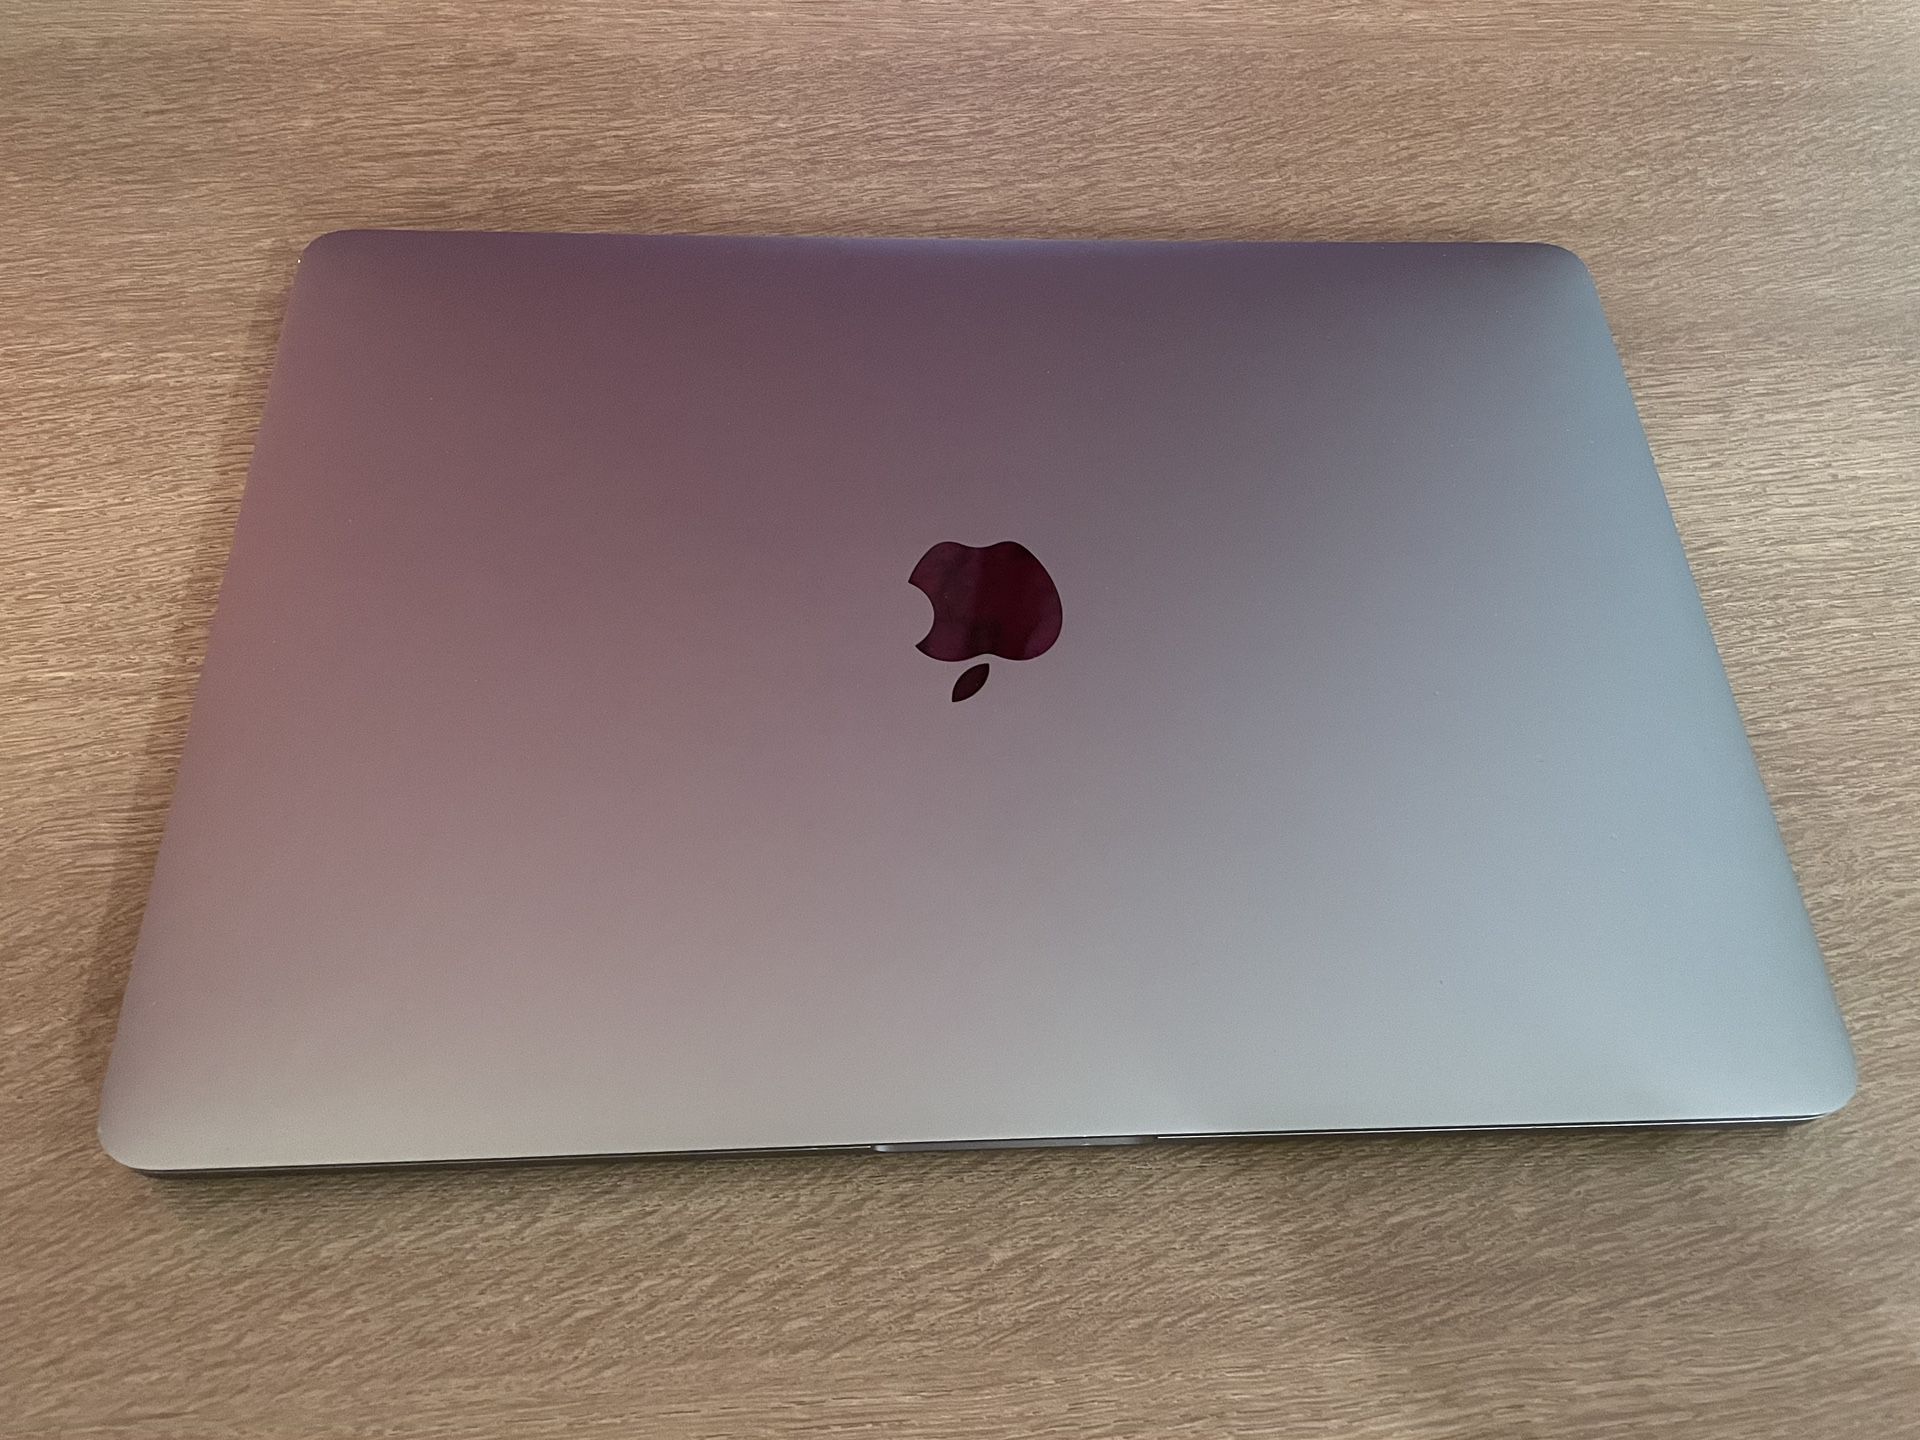 2016 MacBook Pro 13